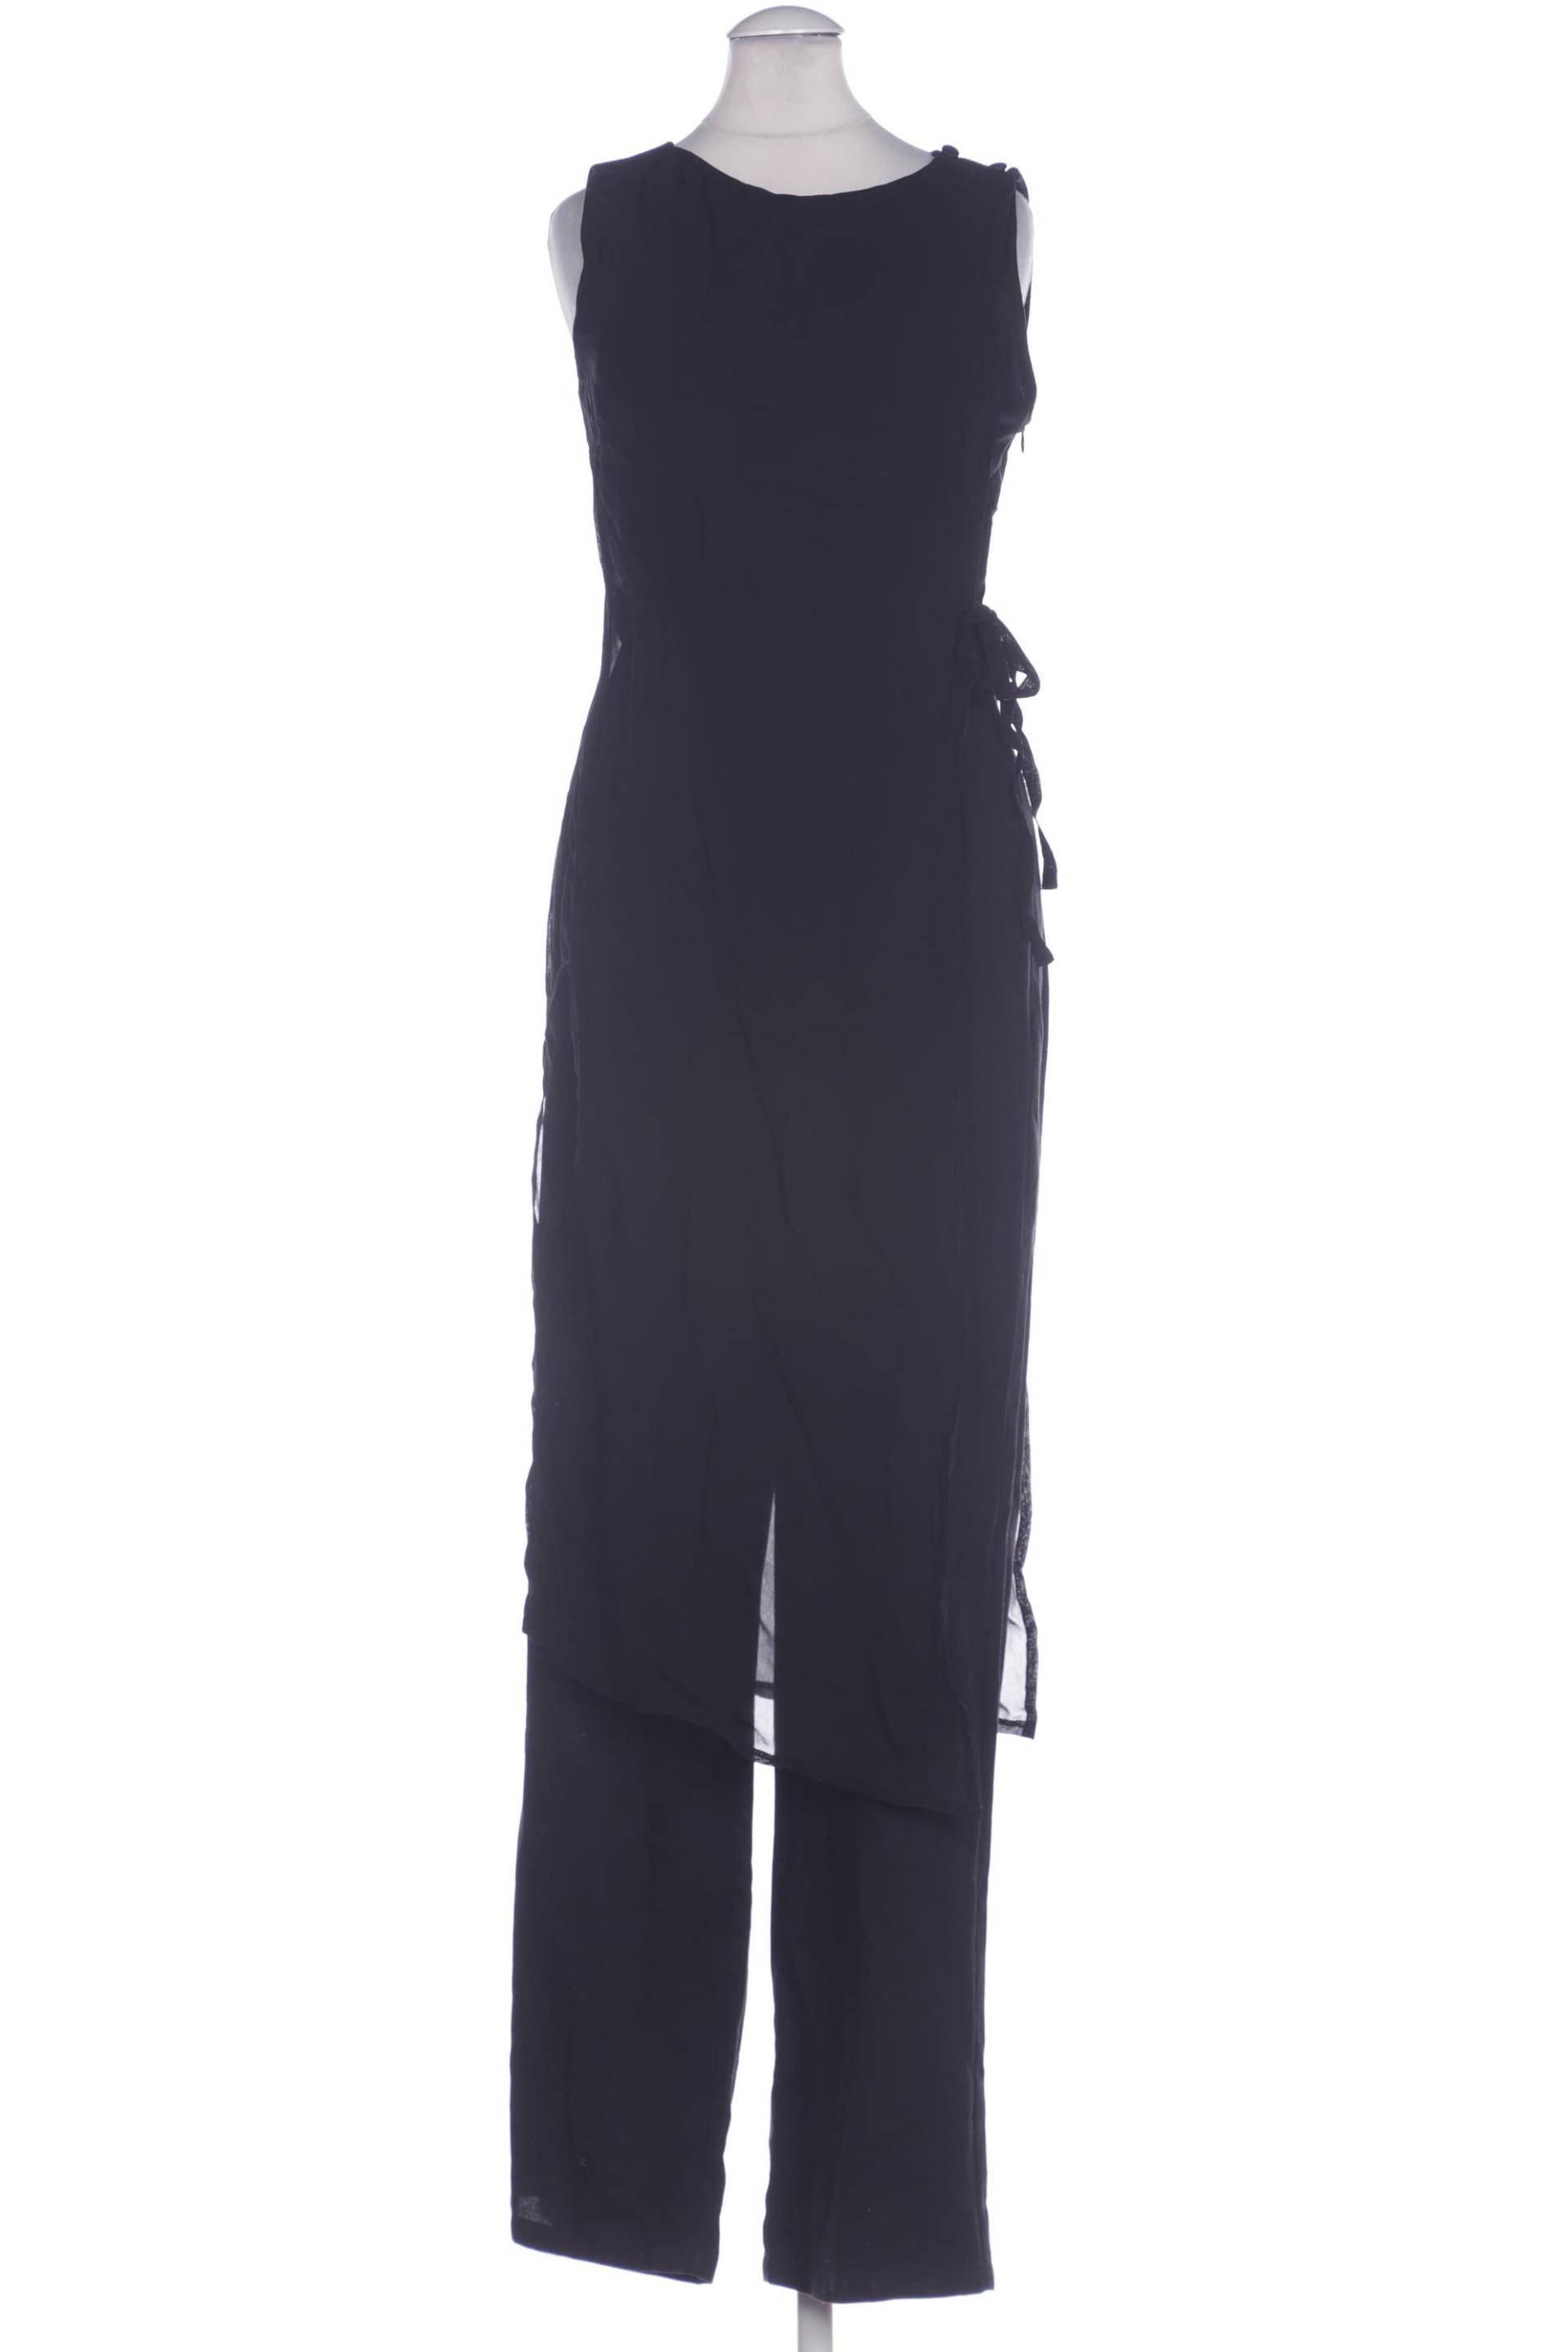 APART Damen Jumpsuit/Overall, schwarz von Apart